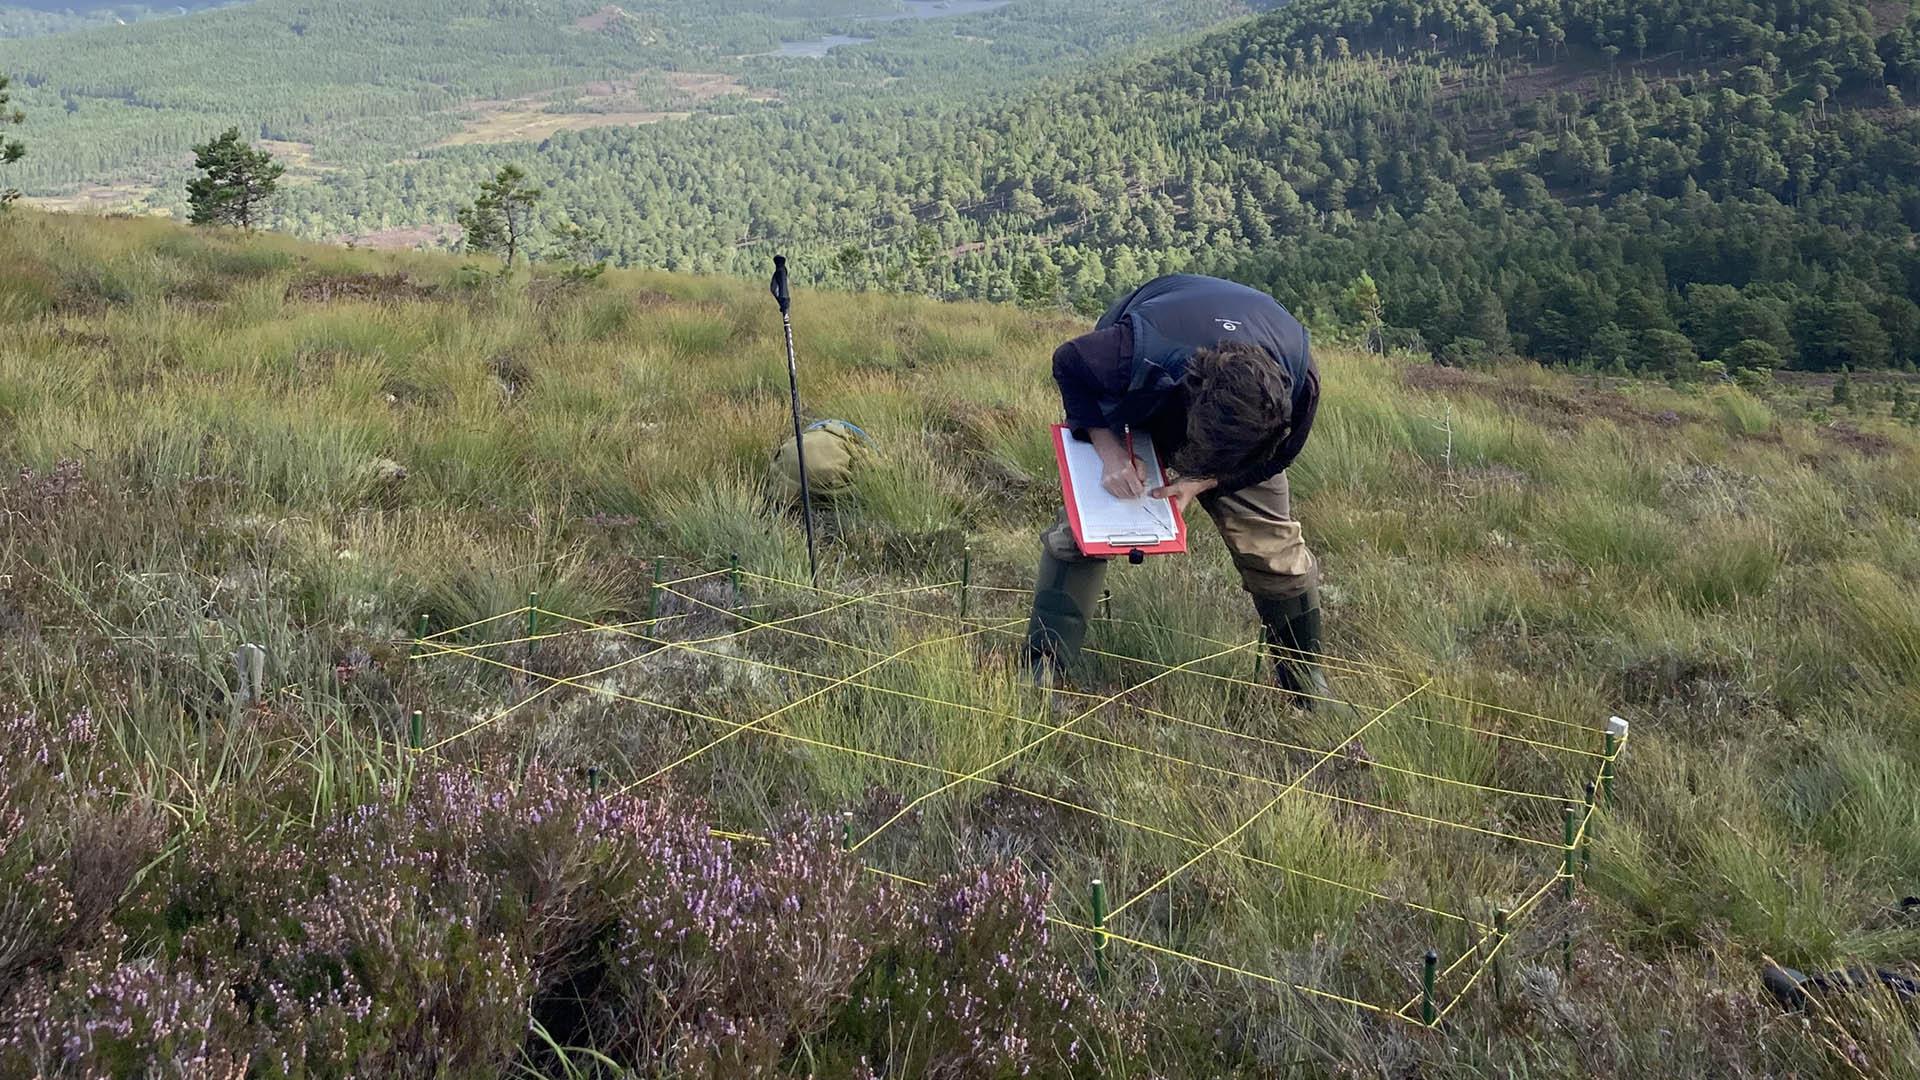 Surveying vegetation